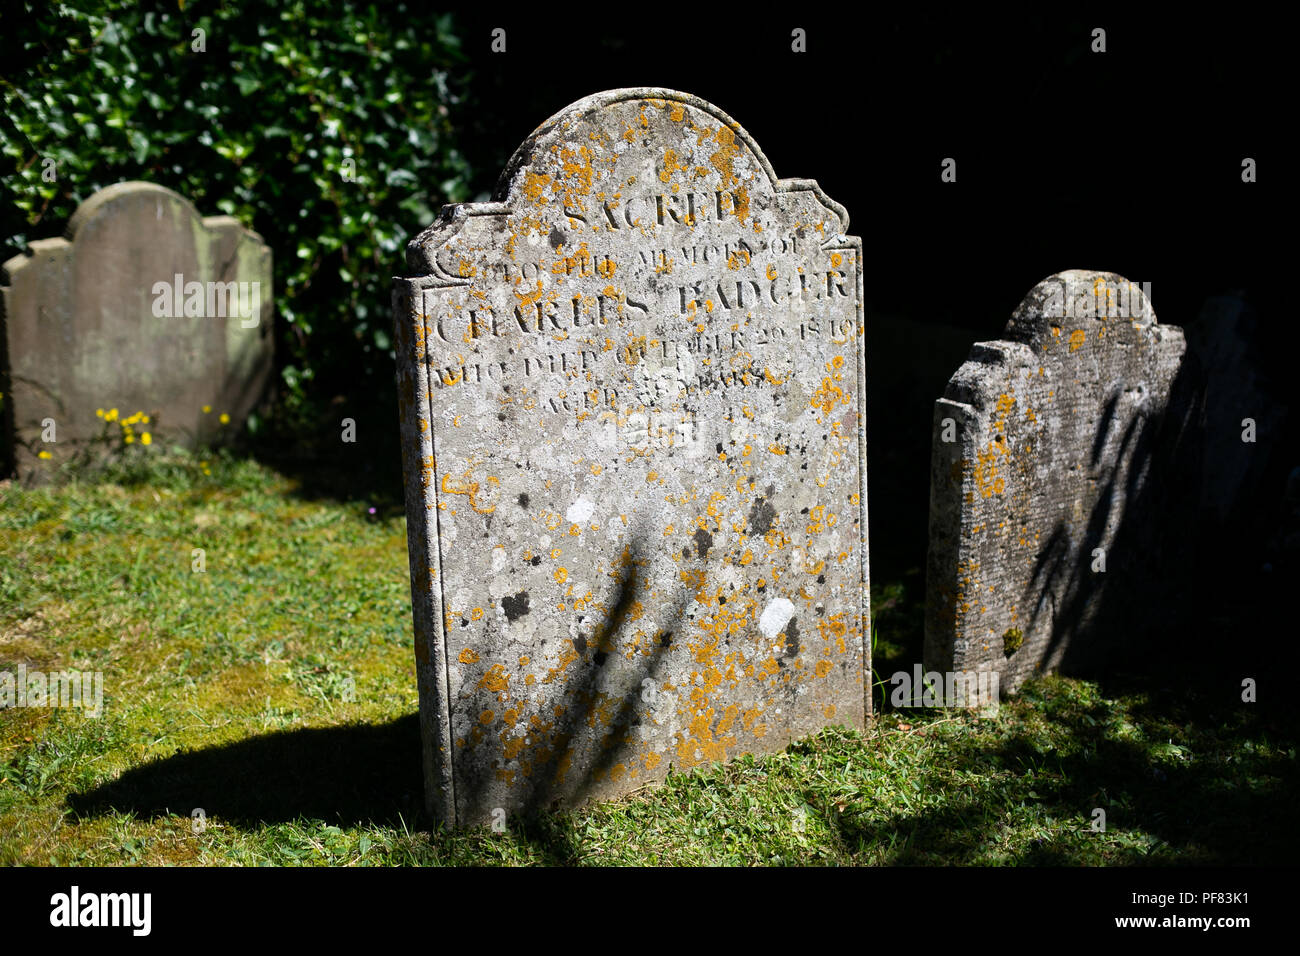 Moos und Flechten bedeckte Grabstein in einem englischen Dorf Beerdigung Friedhof Friedhof Stockfoto